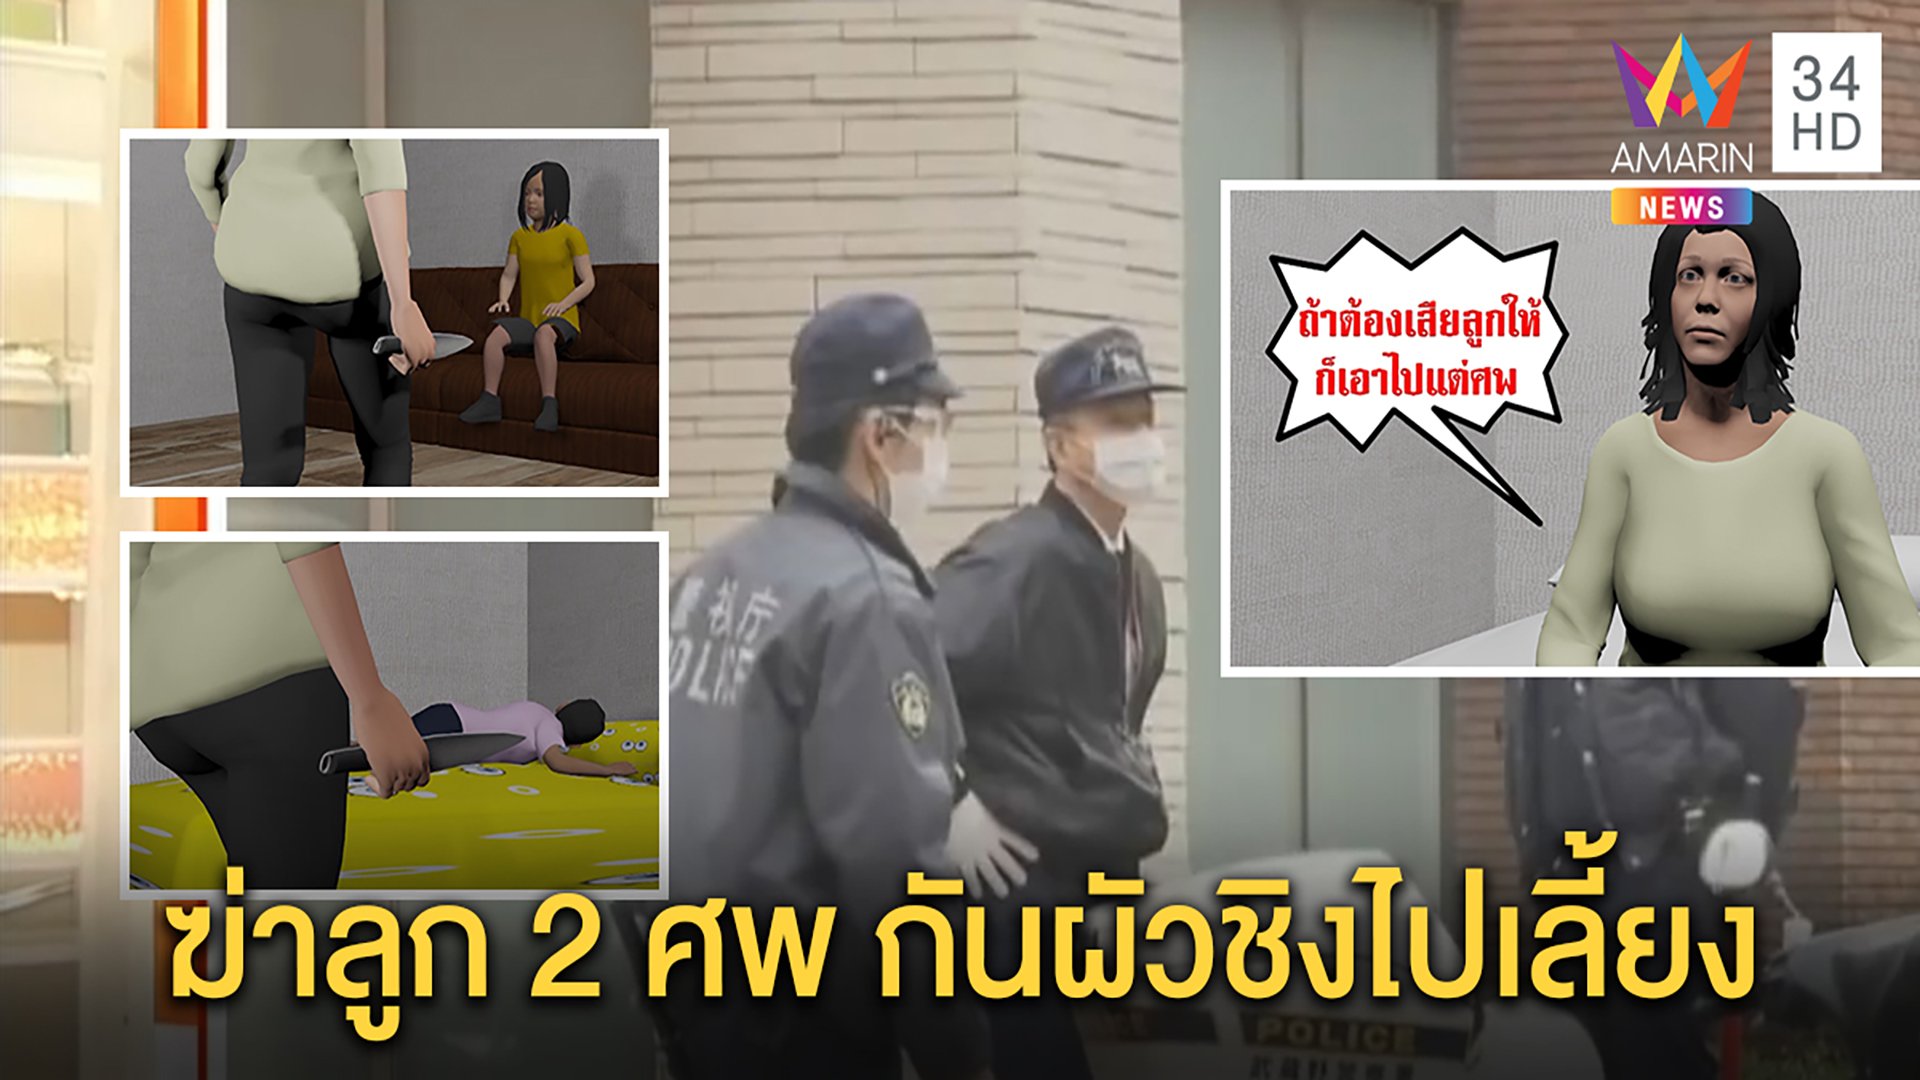 สยอง!หญิงไทยฆ่าลูก 2 คนขณะหลับ กันผัวแย่งสิทธิ์ไปเลี้ยง ลั่น“อยากได้เอาศพไปแทน” | ทุบโต๊ะข่าว | 24 มี.ค. 63 | AMARIN TVHD34